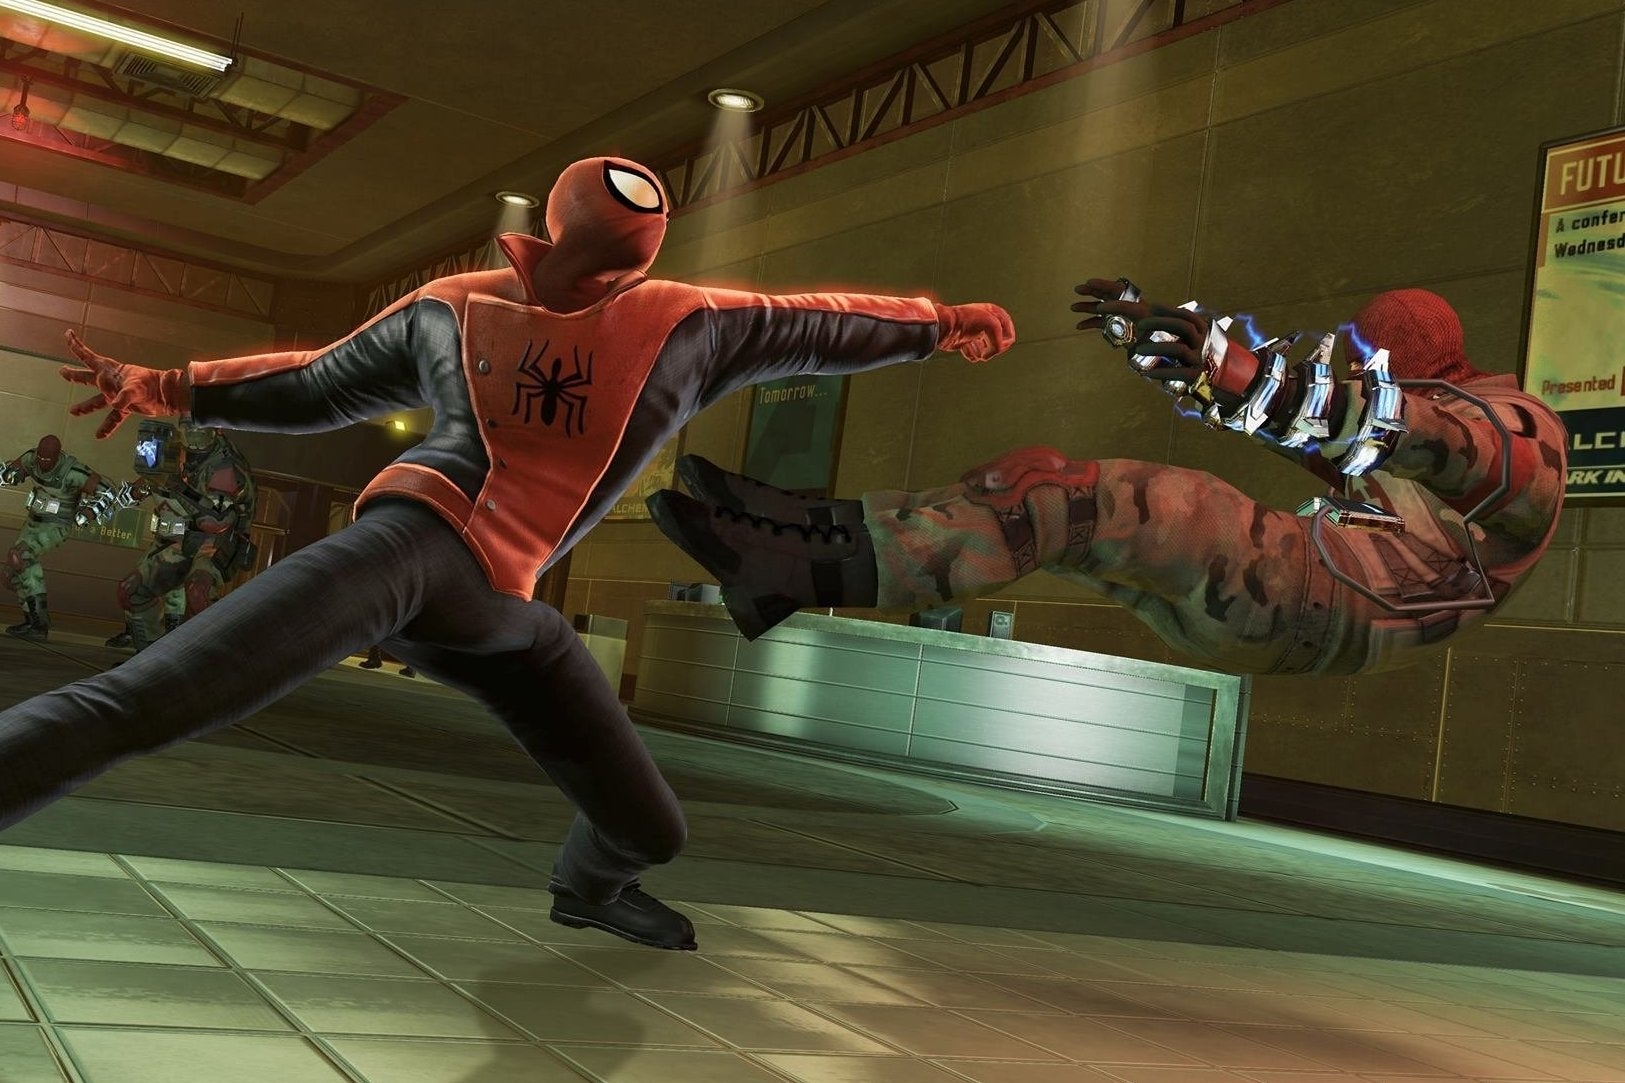 Immagine di Eurogamer.it gioca The Amazing Spider-Man 2 oggi alle 16:30 su YouTube